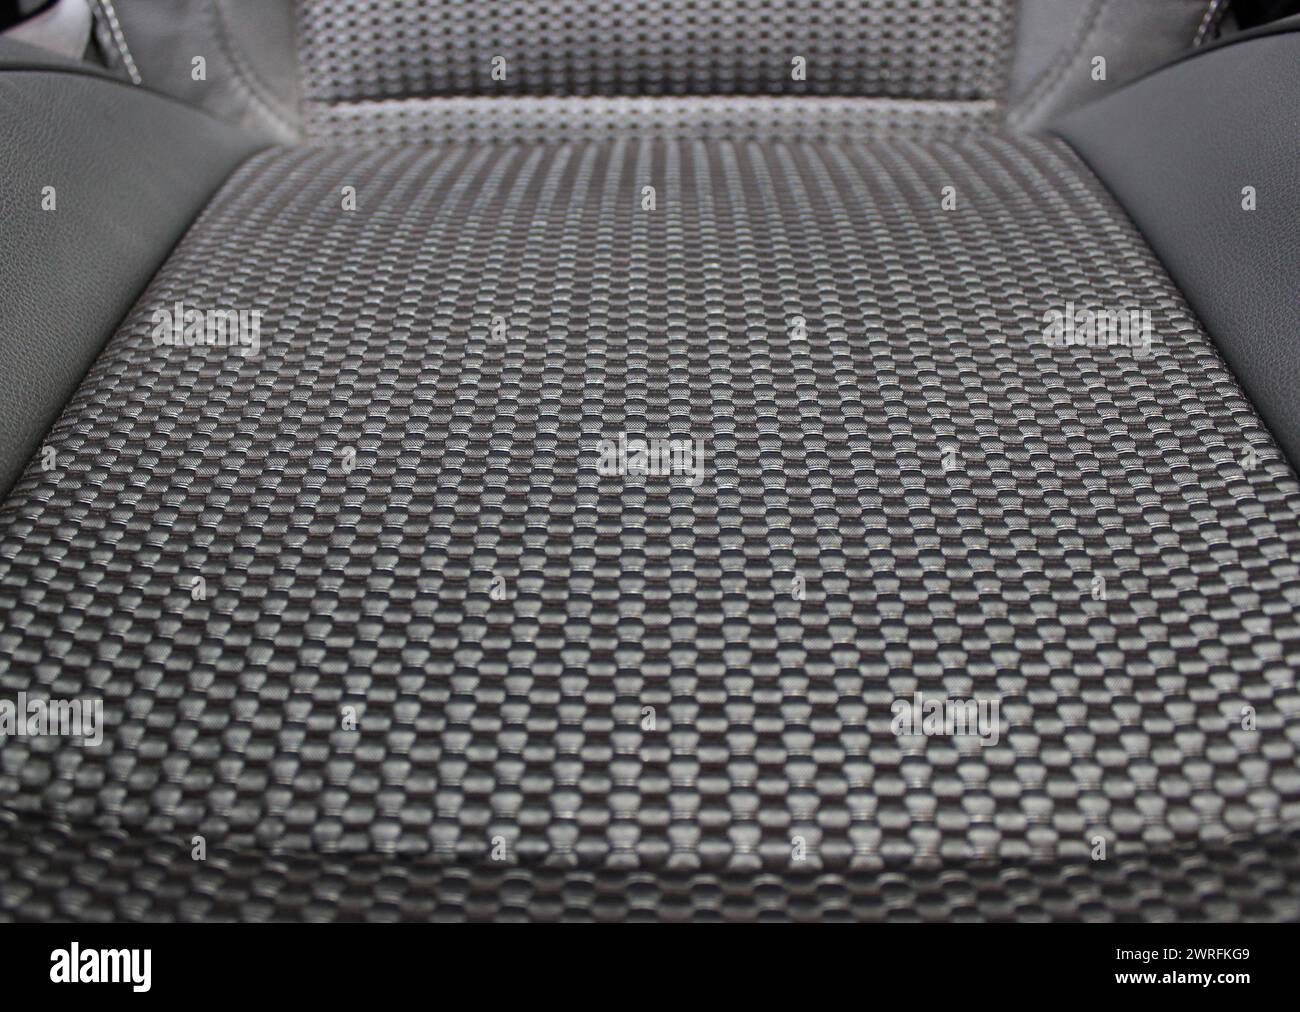 Kompliziertes Polstermuster aus Bandgewebe des Sitzes im modernen Auto Stockfoto